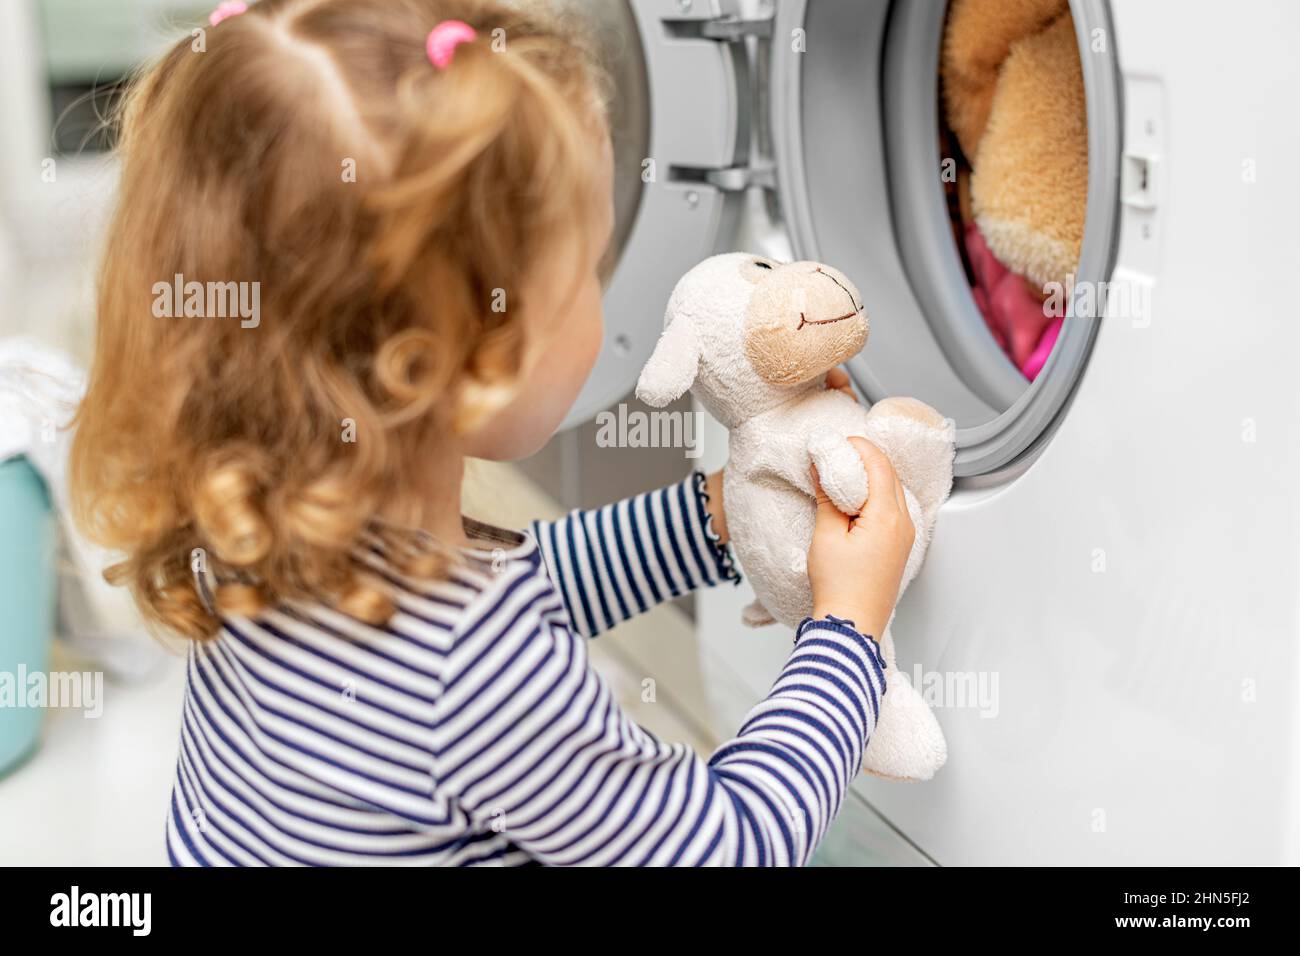 Das Kind beobachtet, wie die Waschmaschine waschen wird. Stockfoto